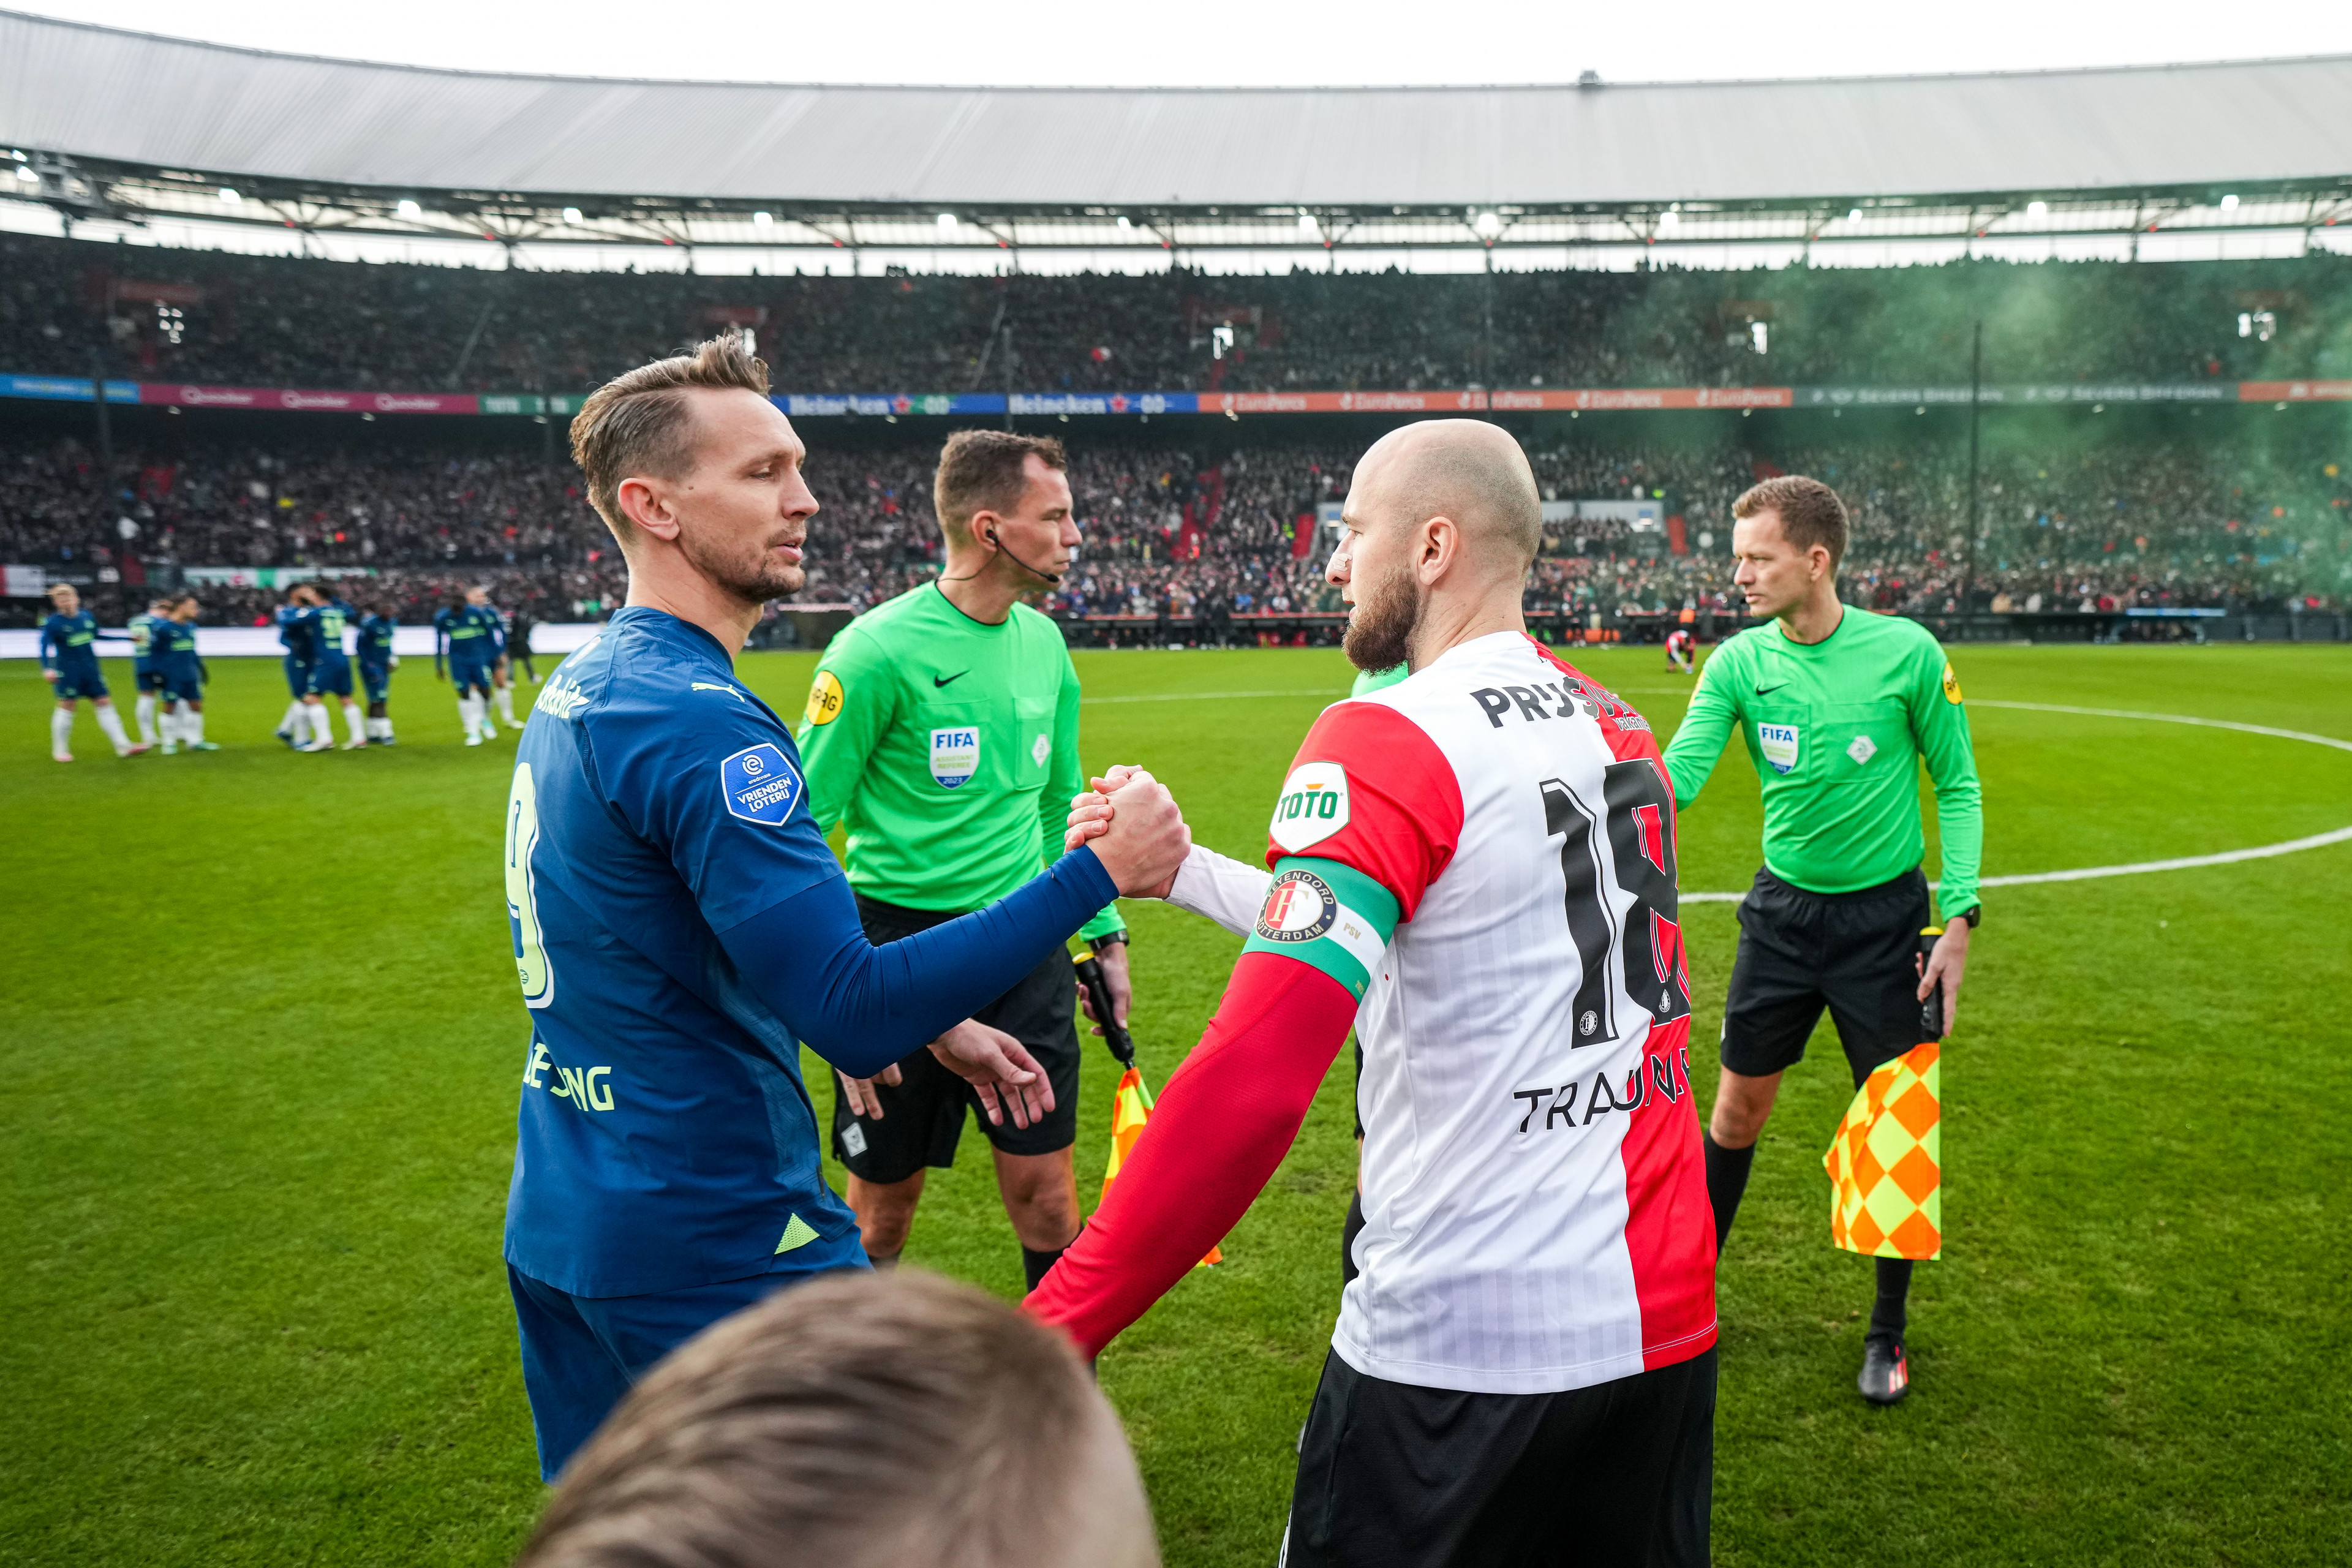 Beoordeel de spelers voor de wedstrijd Feyenoord - PSV (1-2)